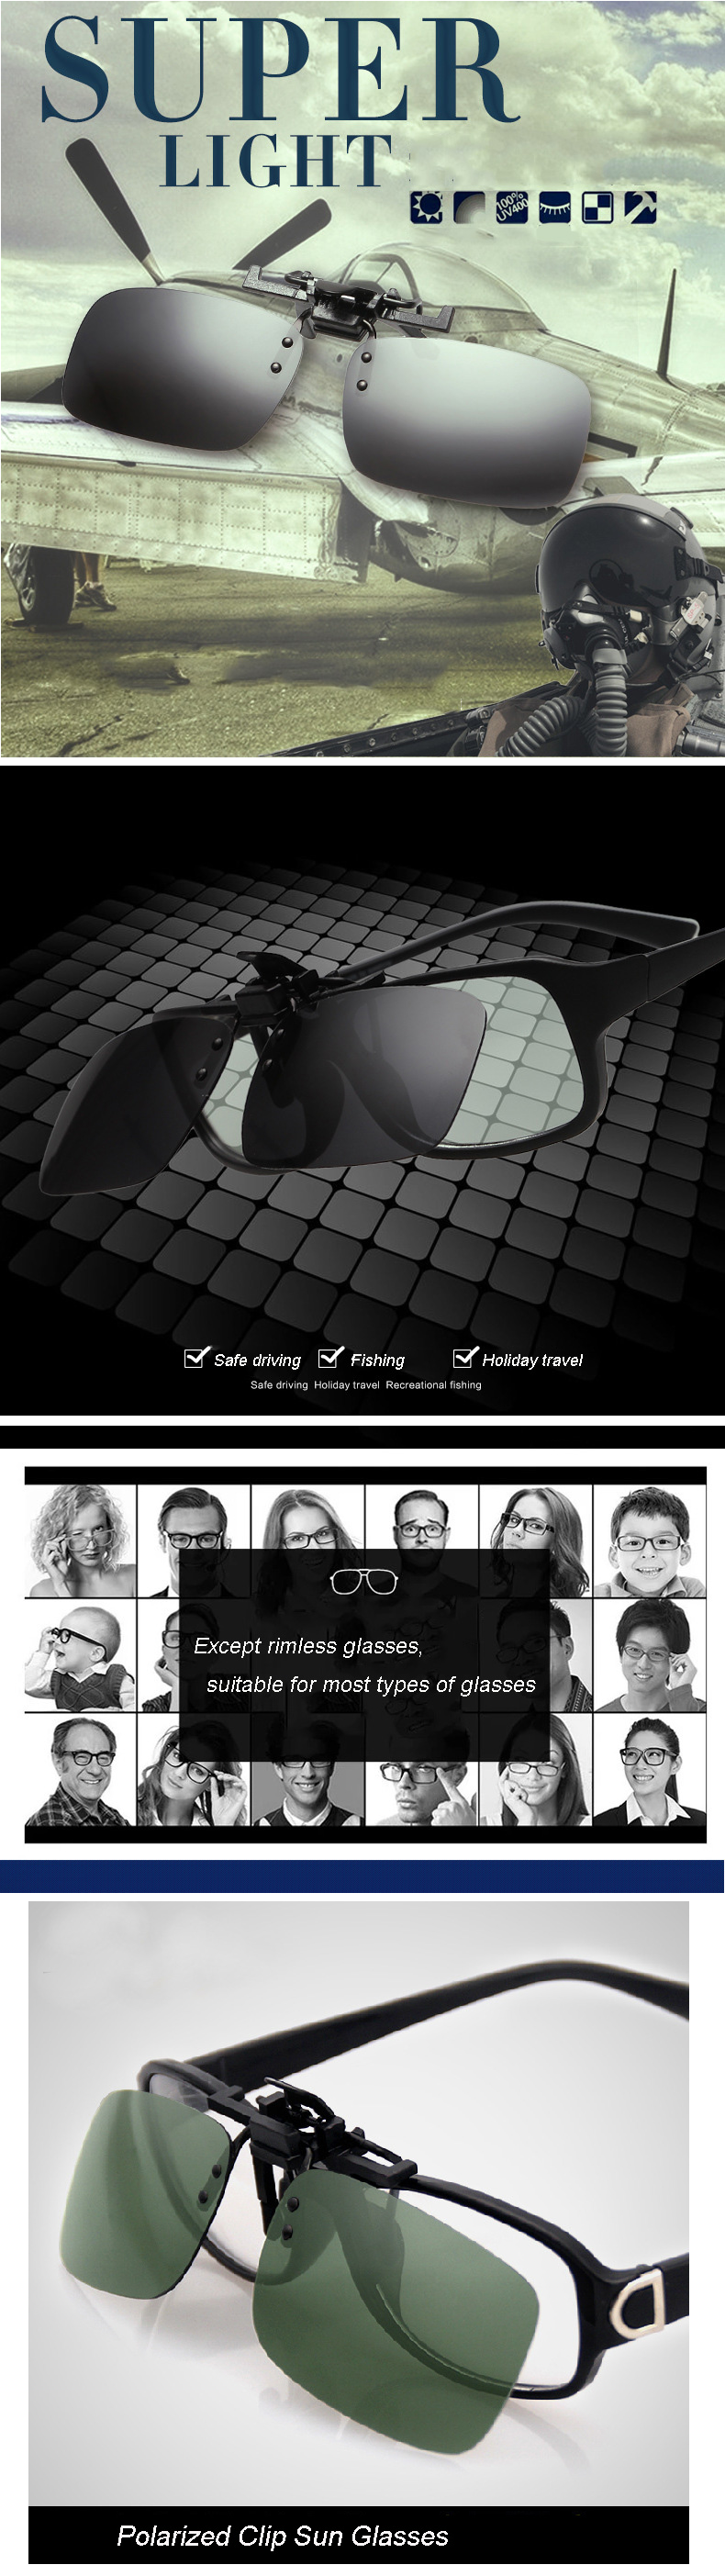 Polarized-Clip-On-Sun-Glassess-Glasses-Lens-Unisex-Night-Vision-Lens-995931